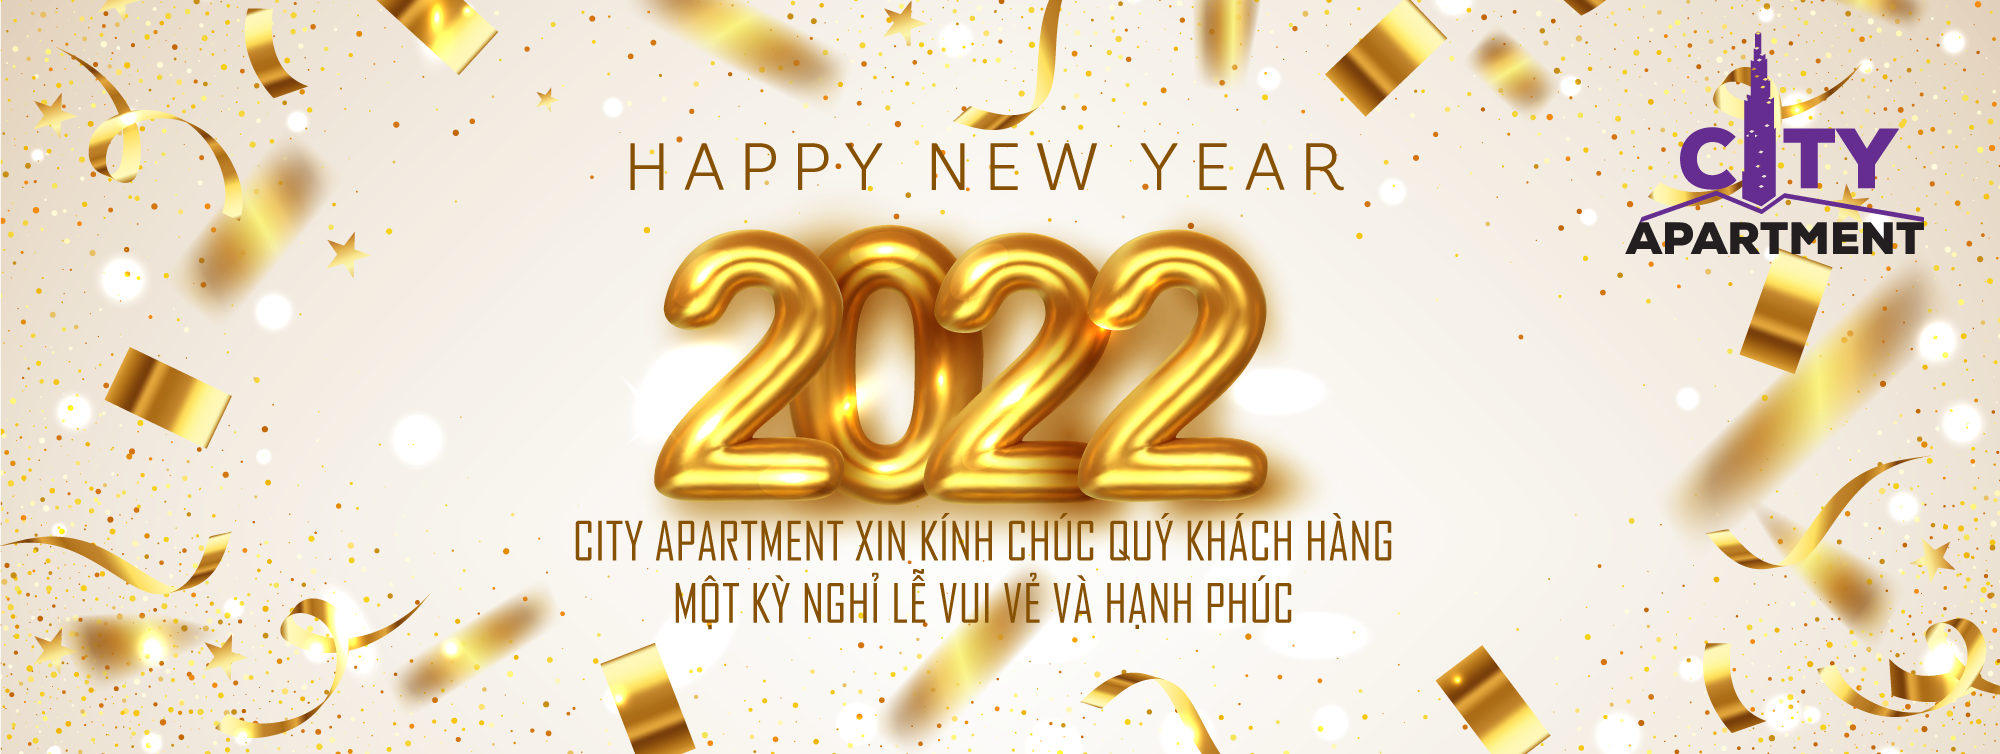 Thư chúc mừng năm mới 2022 – City Apartment